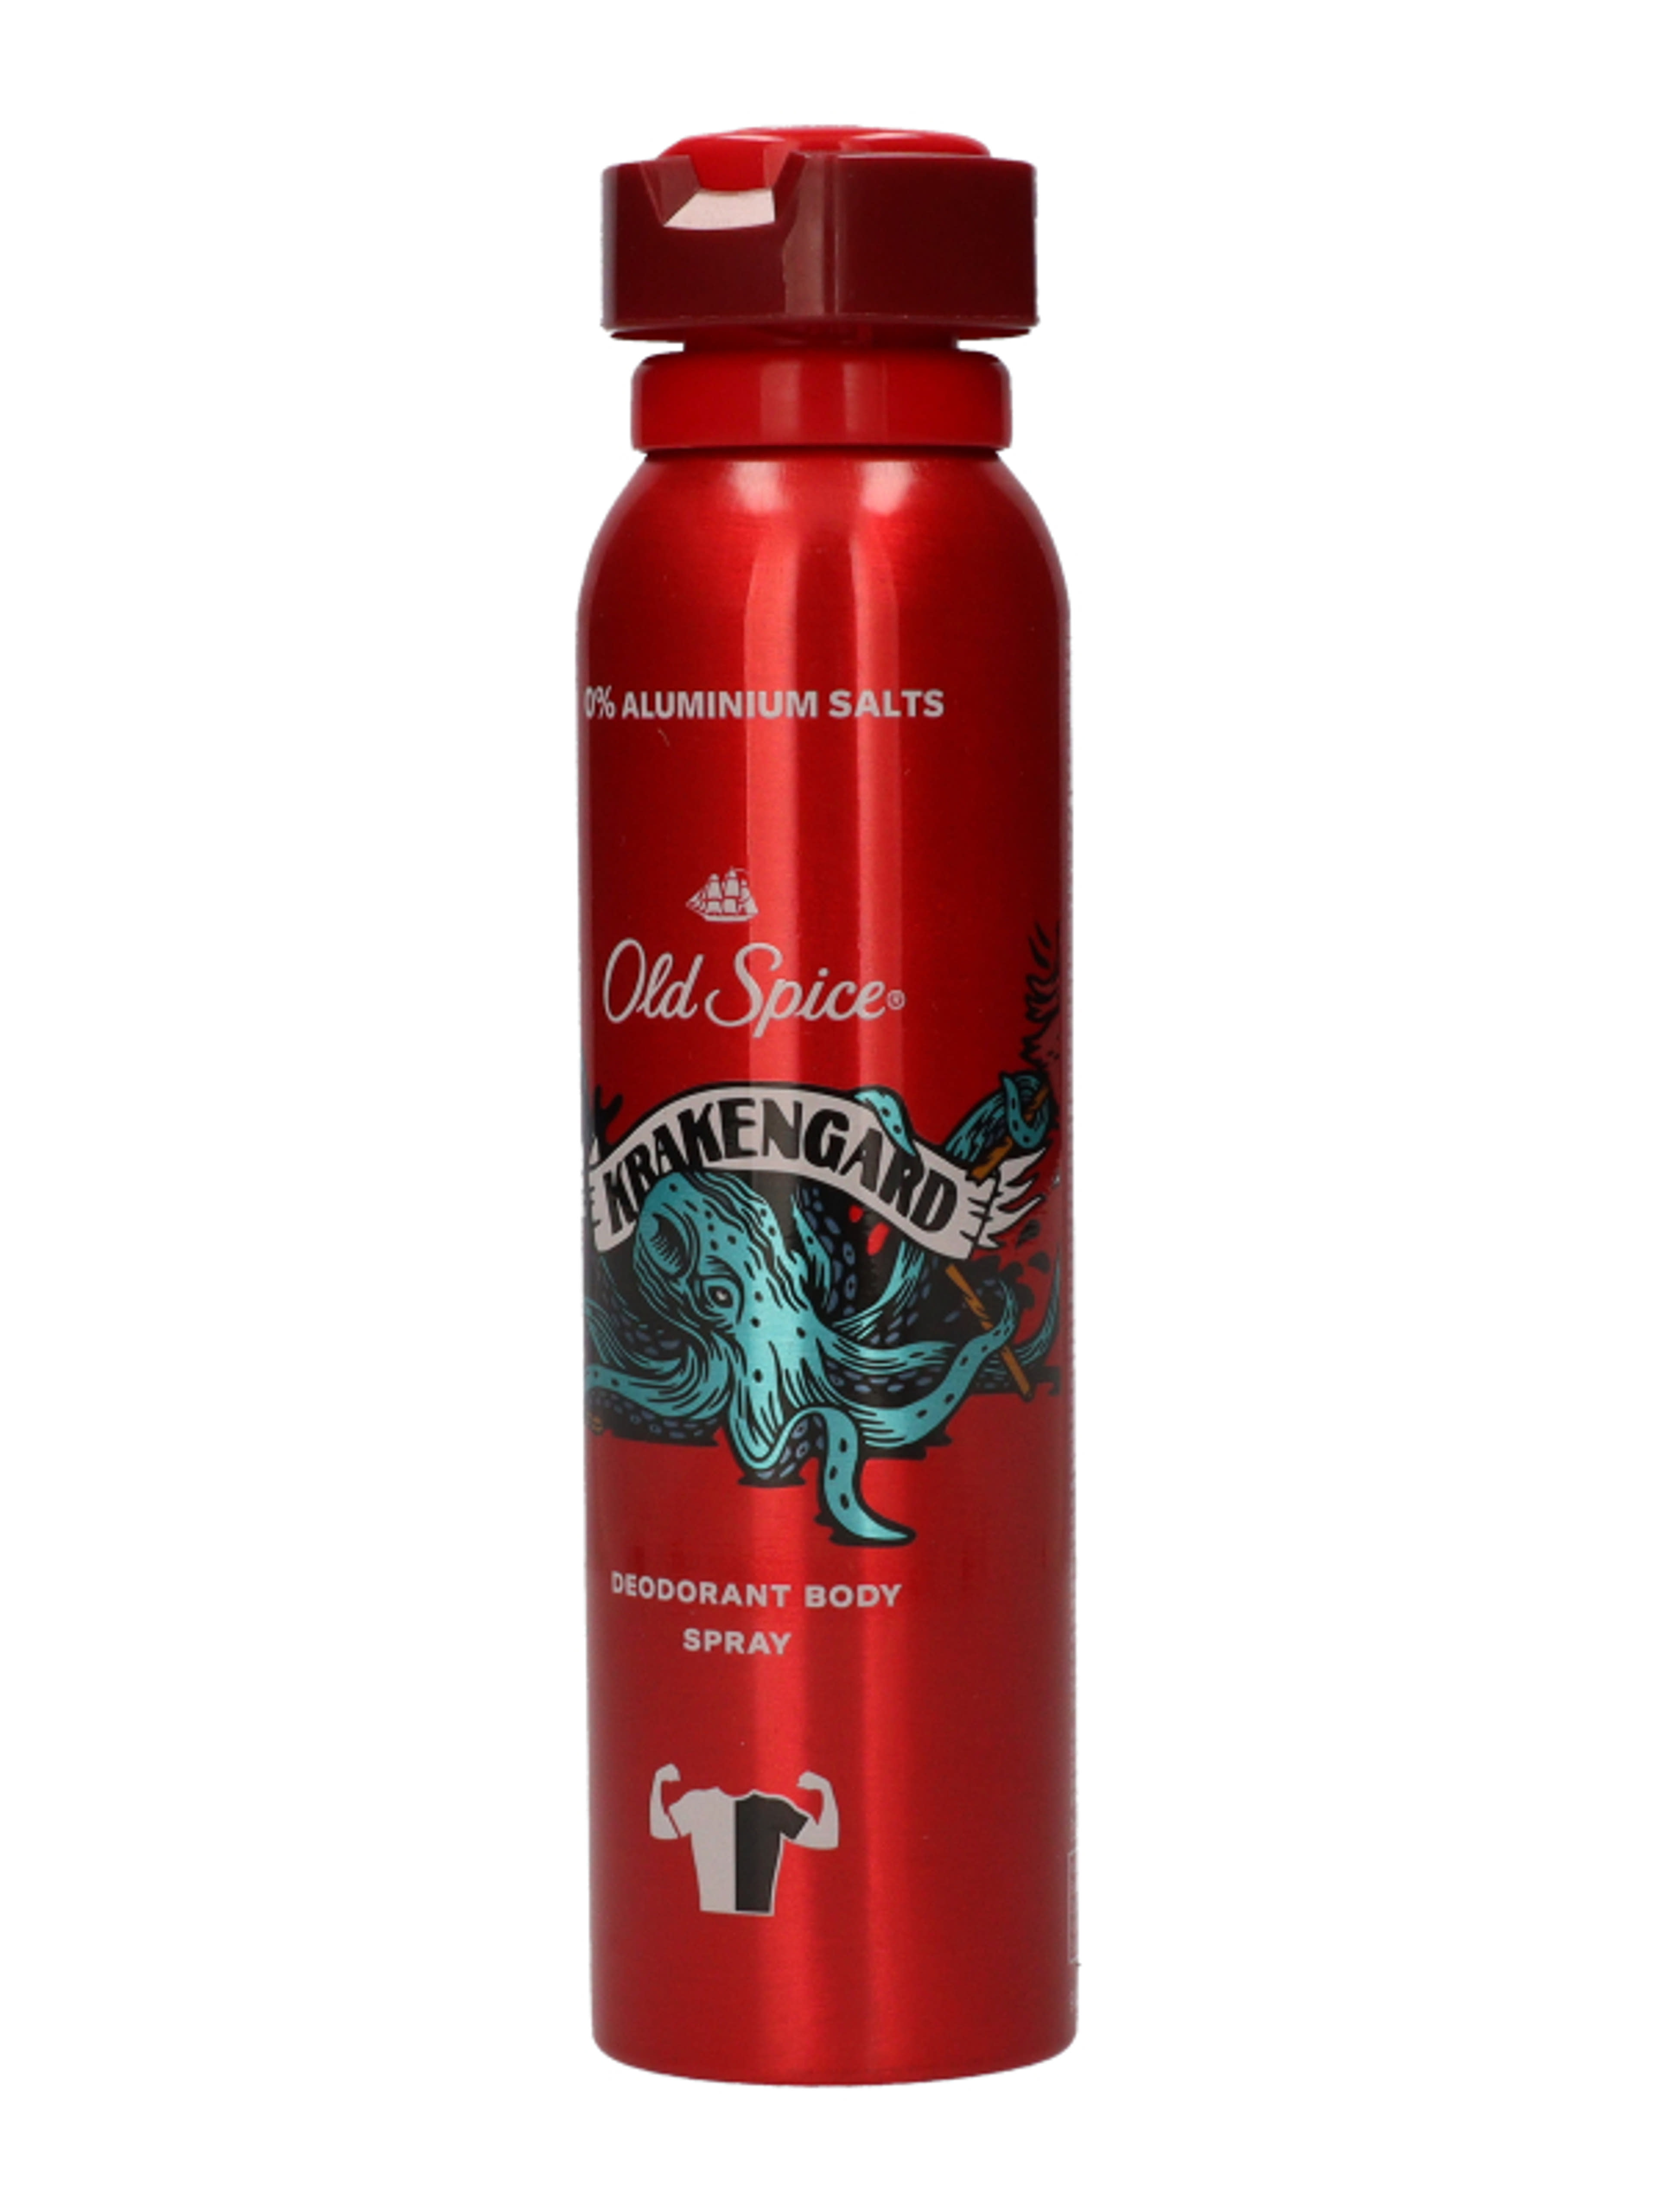 Old Spice deodorant spray krakengard férfi - 150 ml-5